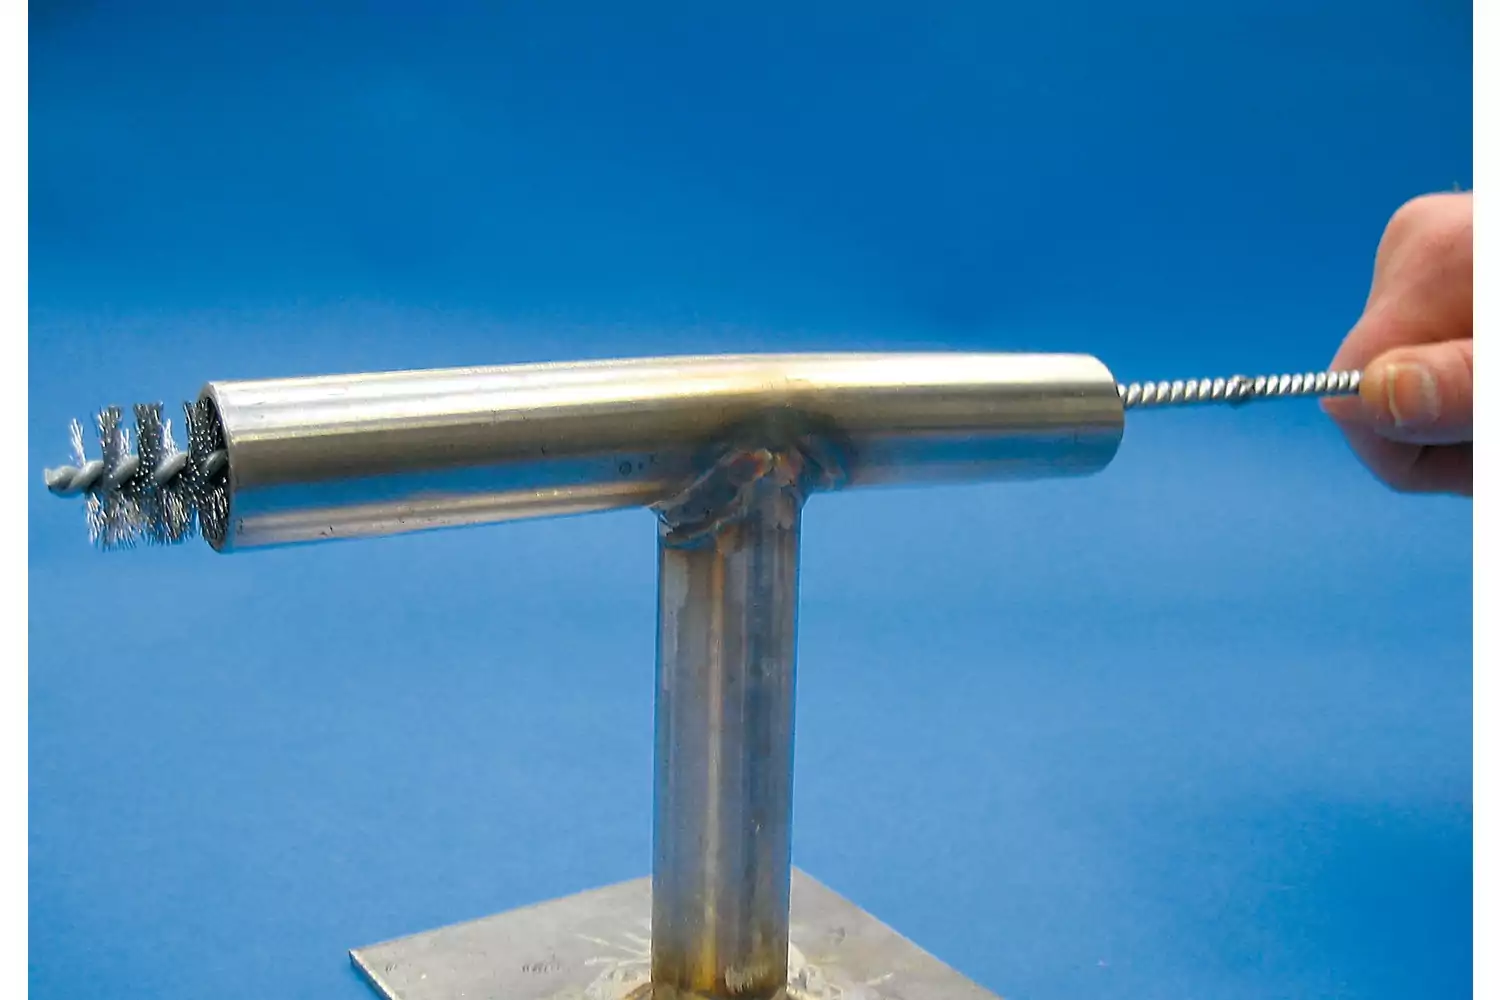 Accesorios de prolongador IBUV para cepillos limpiatubos con rosca 1/2", 300 mm de longitud 2